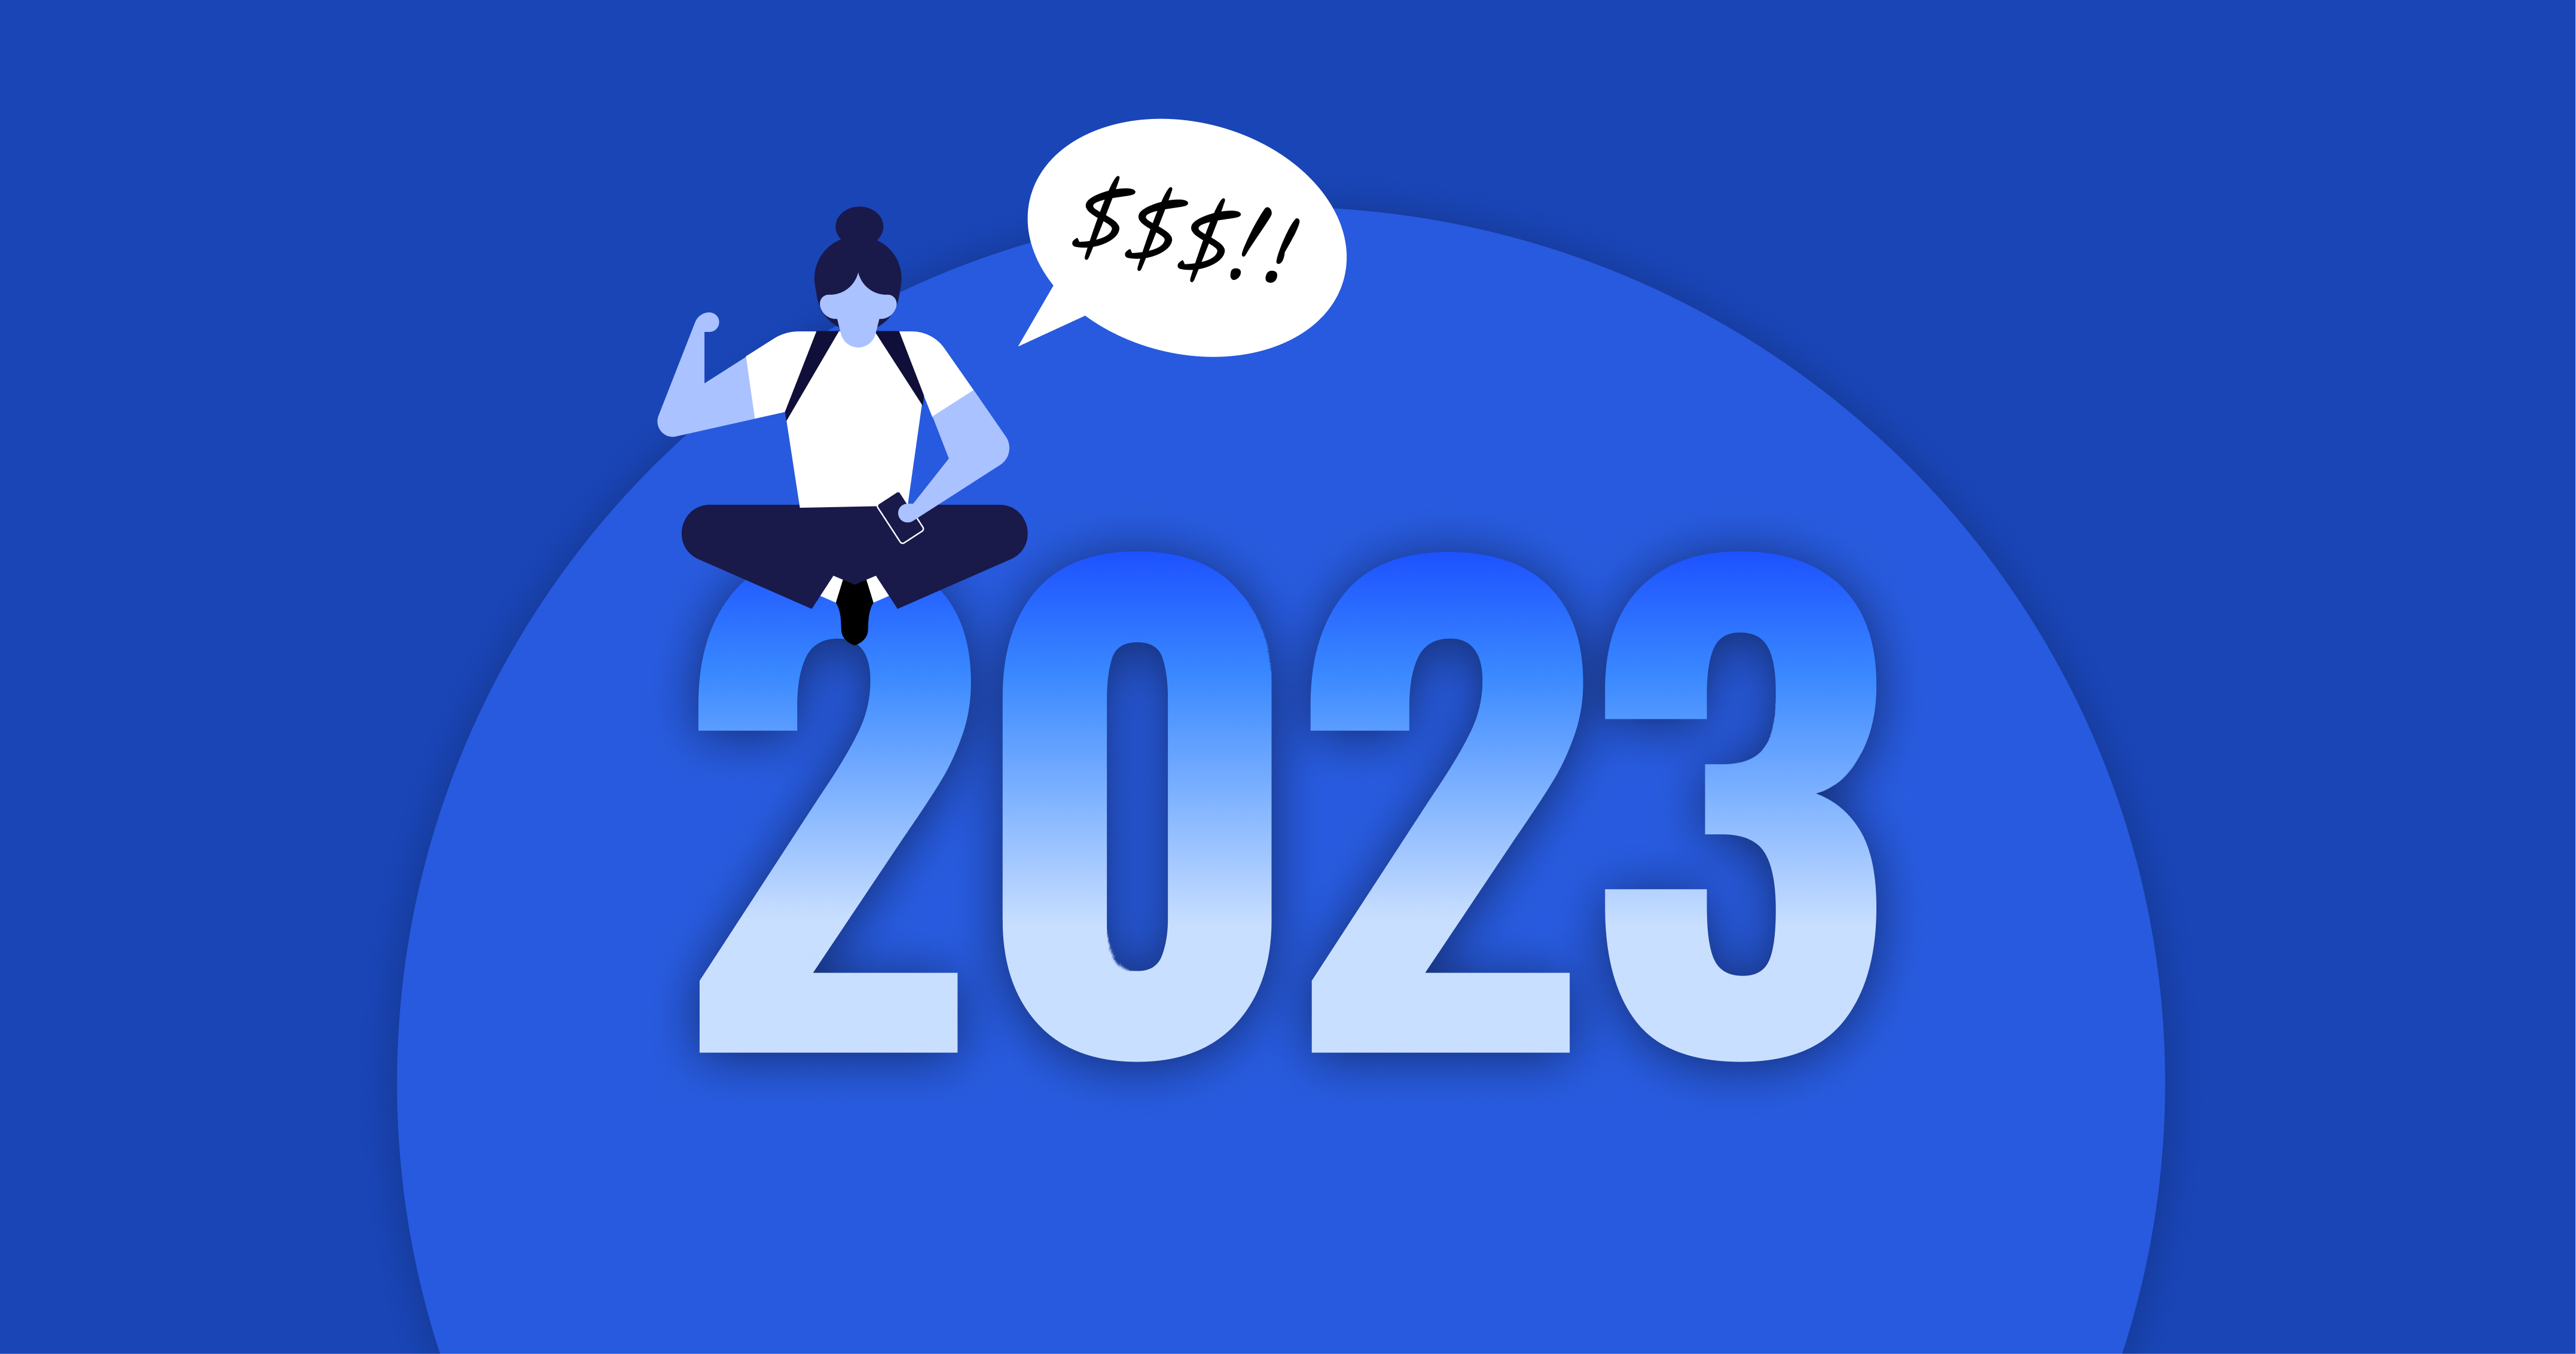 Python Developer Salaries in 2023